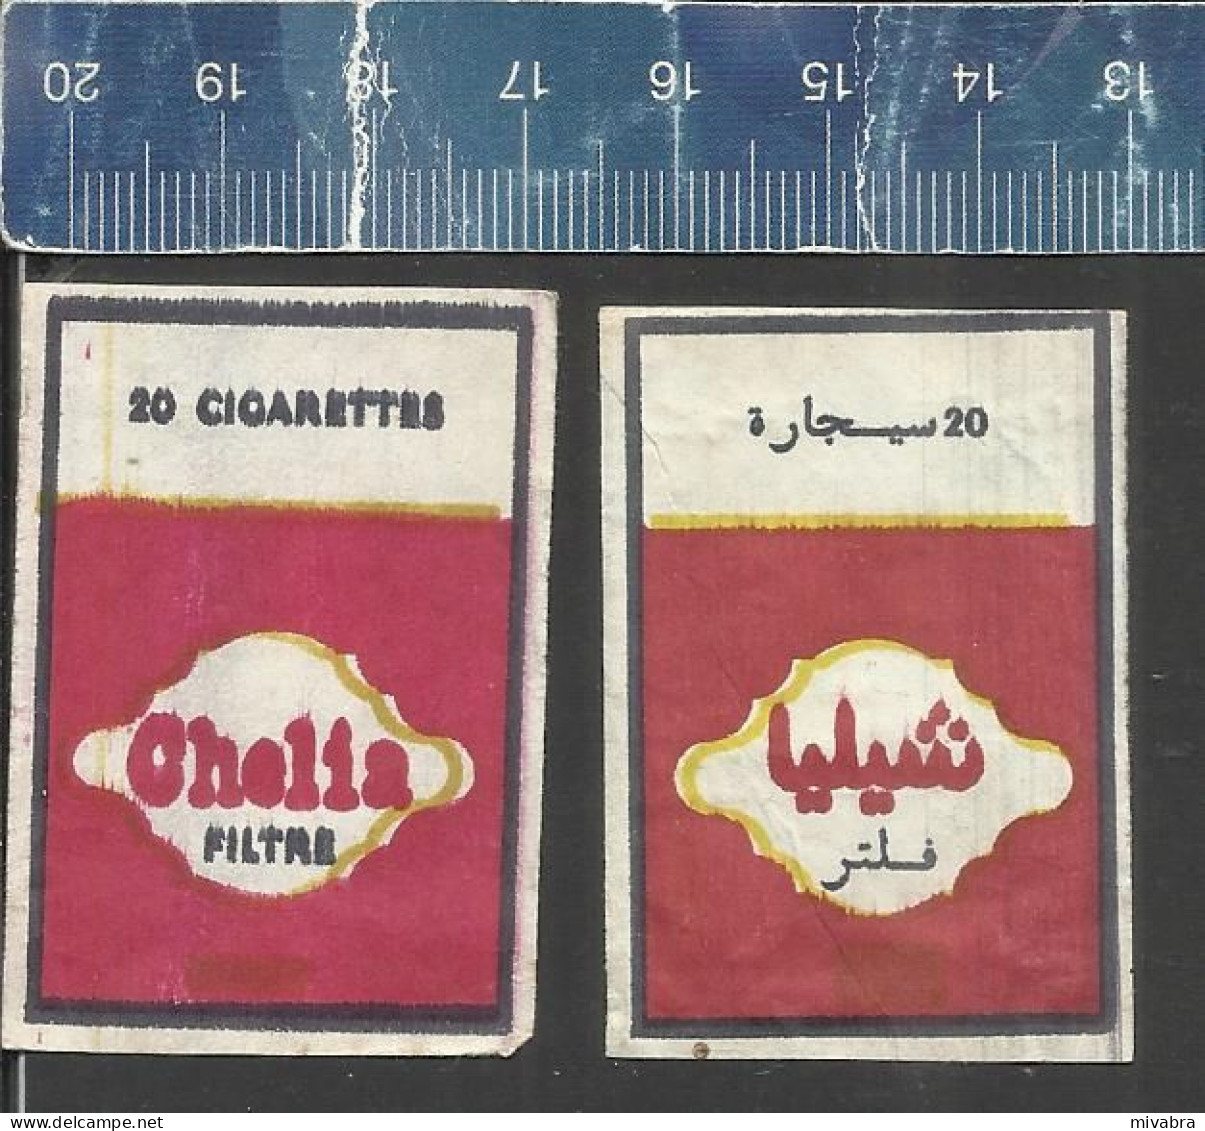 CHELIA FILTRE ( CIGARETTES SIGAETTEN ) - OLD MATCHBOX LABELS  ALGERIA - Boites D'allumettes - Etiquettes